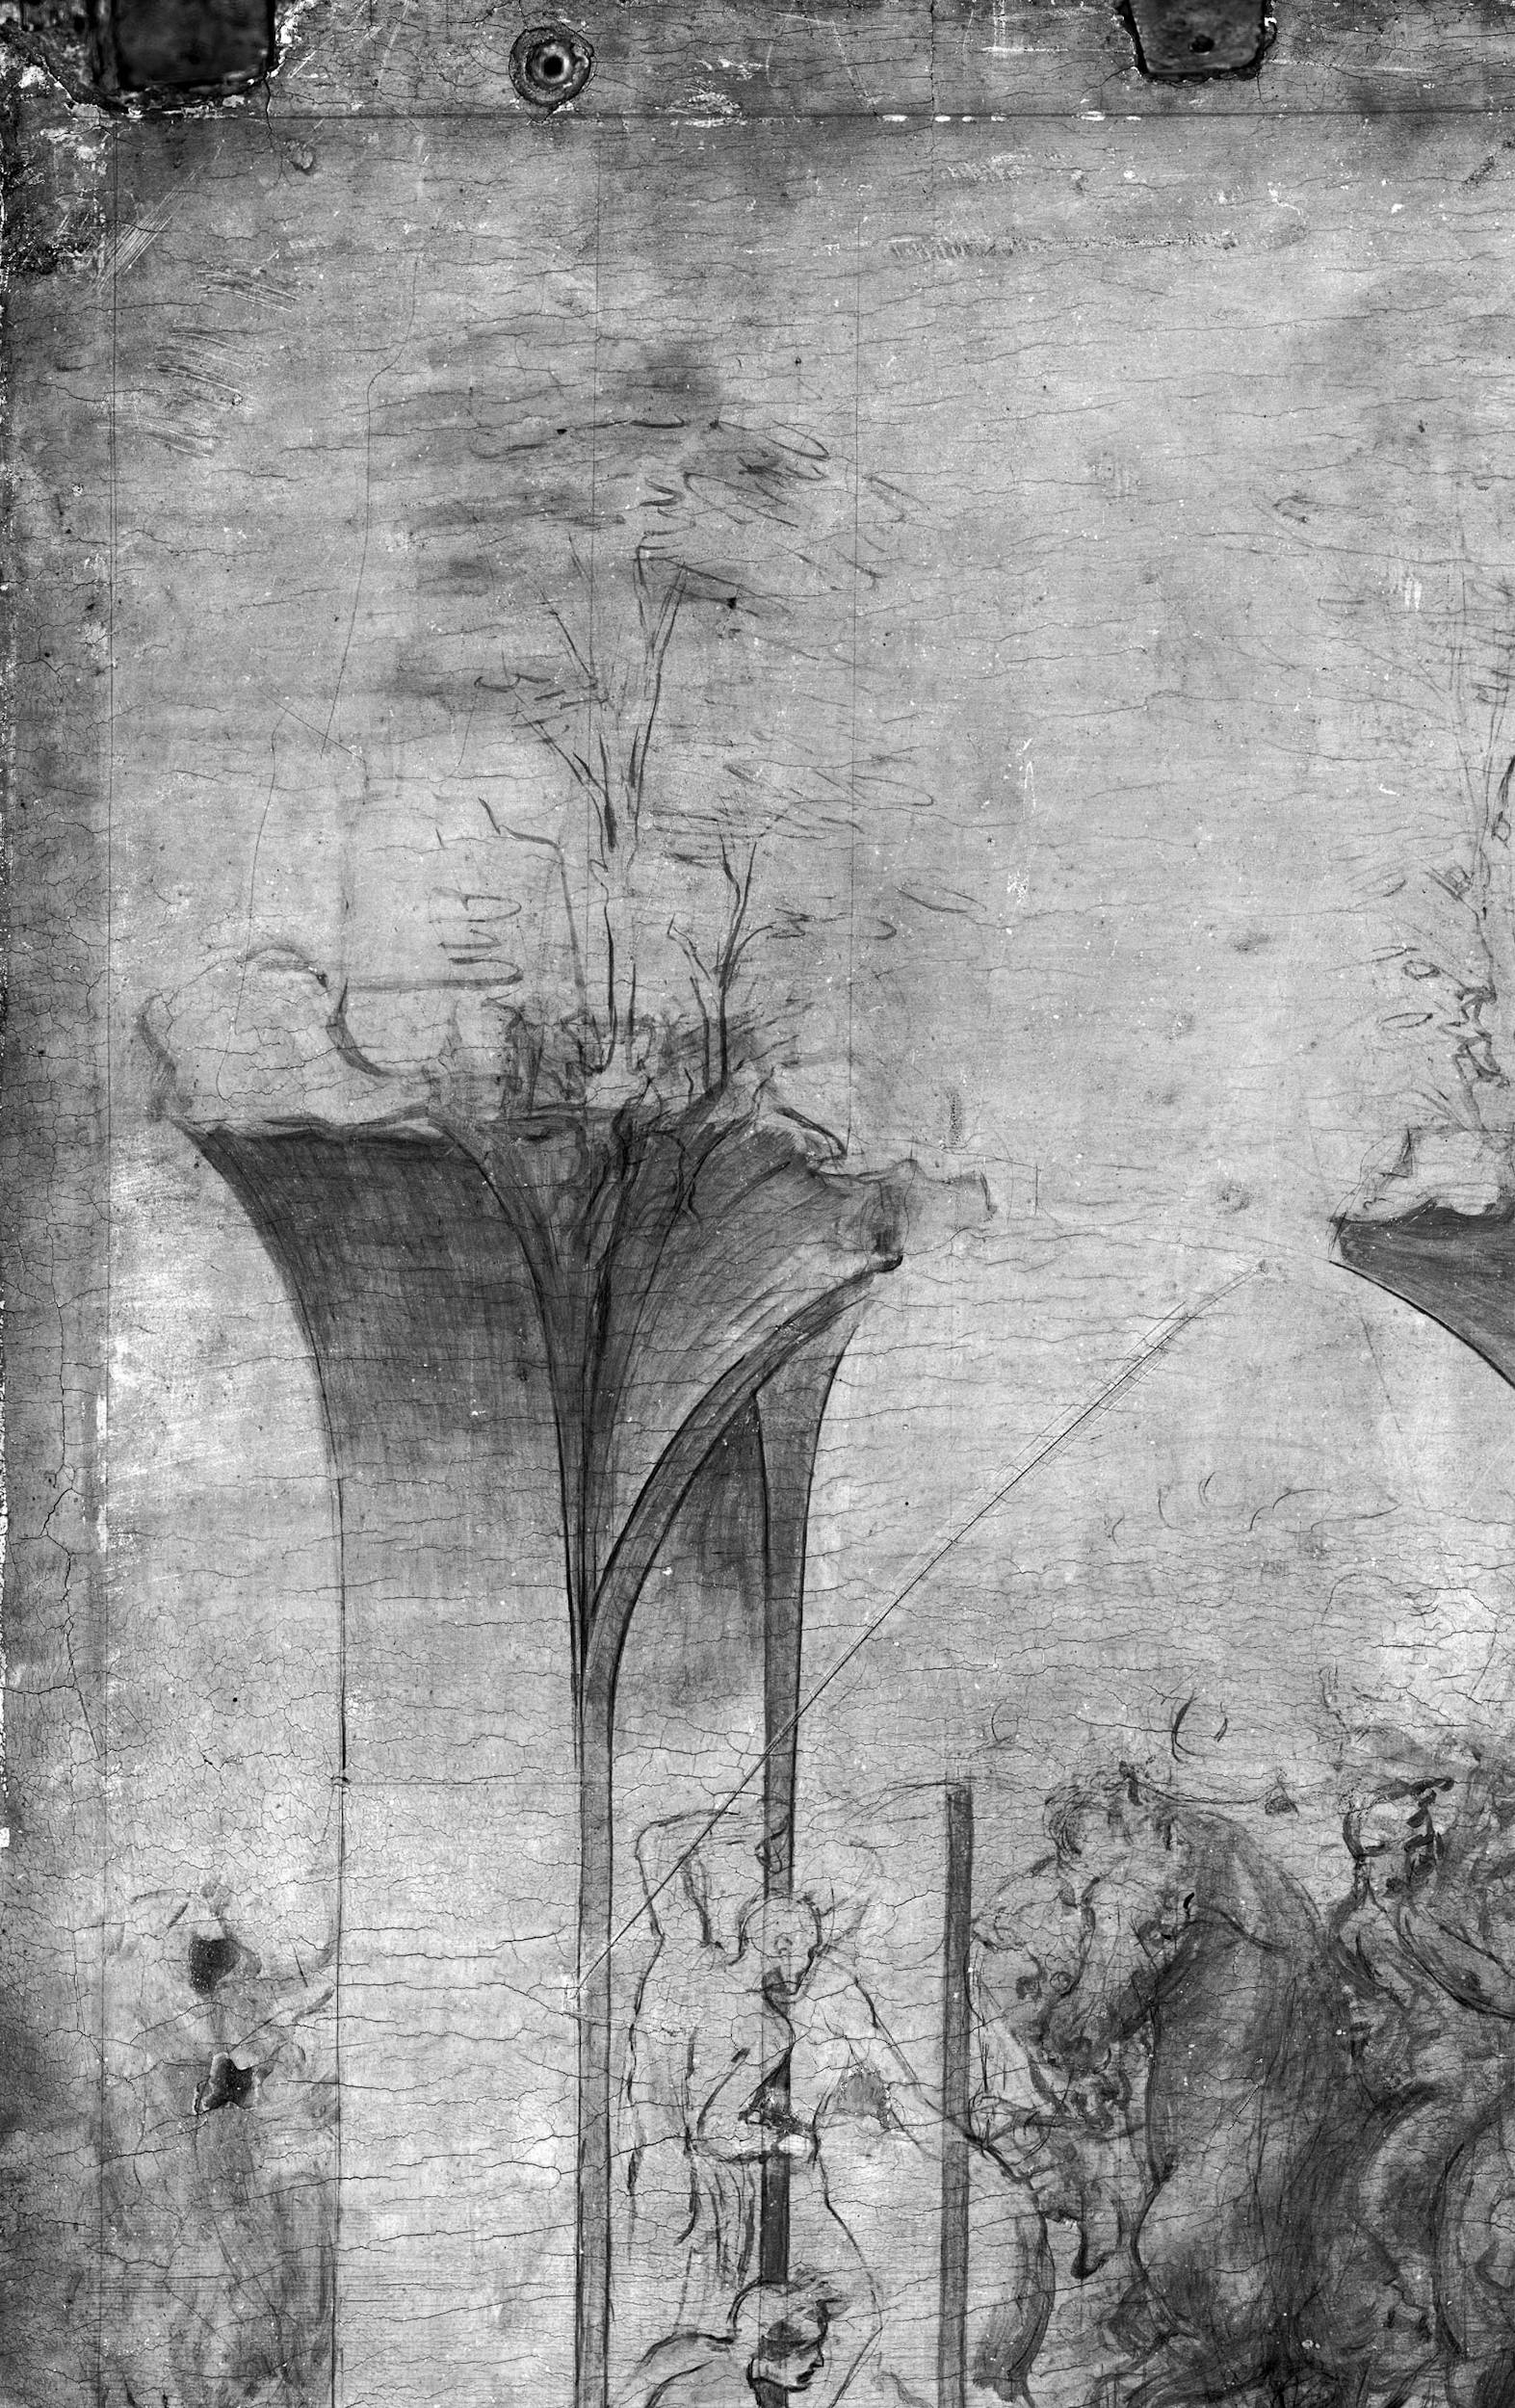 7a. Leonardo da Vinci, Adorazione dei Magi, dettaglio della riflettografia IR con le incisioni che segnano i bordi